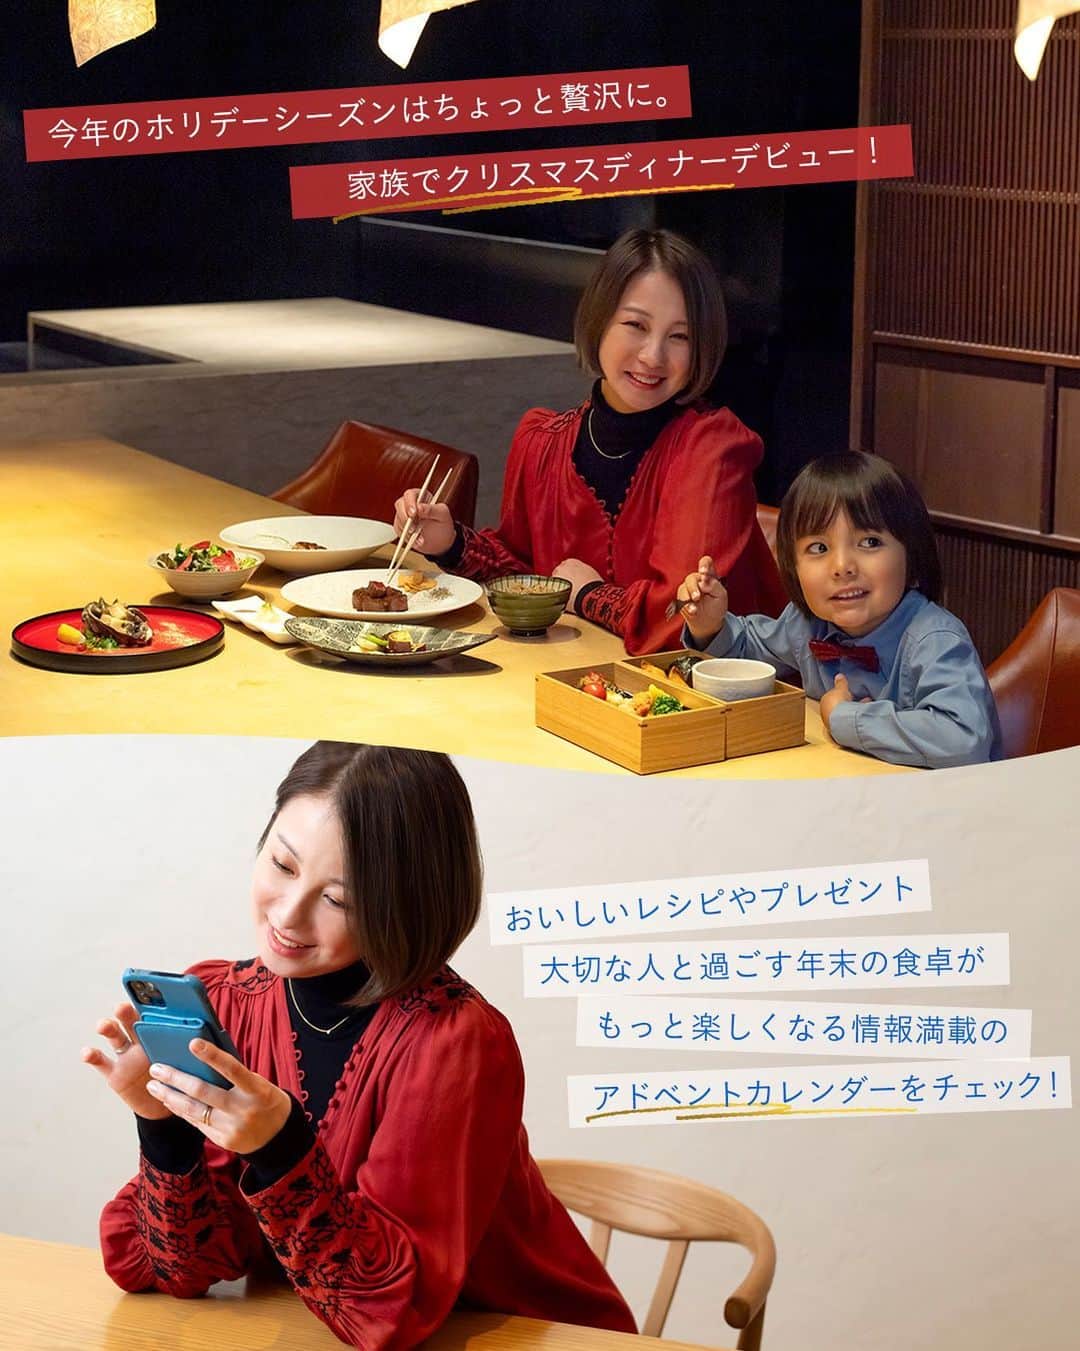 LEEのインスタグラム：「あっという間に師走を迎え、慌ただしくもある今日この頃。今年のホリデーシーズンは、家族でおしゃれをして食事に出かけてみるのはいかがでしょう。２児のママでもあるモデル・田中美保さんが今回訪れたのは、東京・新宿、ヒルトン東京内の「日本料理 十二颯」。充実したメニュー、洗練された空間ながら、キッズフレンドリーなサービスが充実しているのが安心です。   特別な食事の機会も増える年末年始。大切な人と過ごす食卓を心ゆくまで楽しむためにも、日頃から食生活にはできる限り注意していきたいもの。特定保健用食品「賢者の食卓 ダブルサポート」なら、忙しい私たちでも手軽に取り入れることができそう！　食物繊維の働きで、糖分や脂肪の吸収を抑え、食後の血糖値や血中中性脂肪の上昇をおだやかにしてくれるから、食後の血糖値が気になる方や脂肪の多い食事を摂りがちな方におすすめ。   ただいま、「賢者の食卓 ダブルサポート」では年末を楽しく過ごすための情報満載のアドベントカレンダー企画を開催中！ 子どもと一緒に出かけたいレストランで使えるチケットやグルメギフトのプレゼント情報、みんなで楽しめる料理やスイーツのレシピなど、内容盛りだくさん！ 詳細は賢者の食卓公式Xアカウント @kenja_jp でぜひチェックしてみて。   #PR #賢者の食卓ダブルサポート #賢者の食卓アドベントカレンダー #クリスマスディナー #子連れディナー #アドベントカレンダー #ヒルトン東京 #magazinelee」